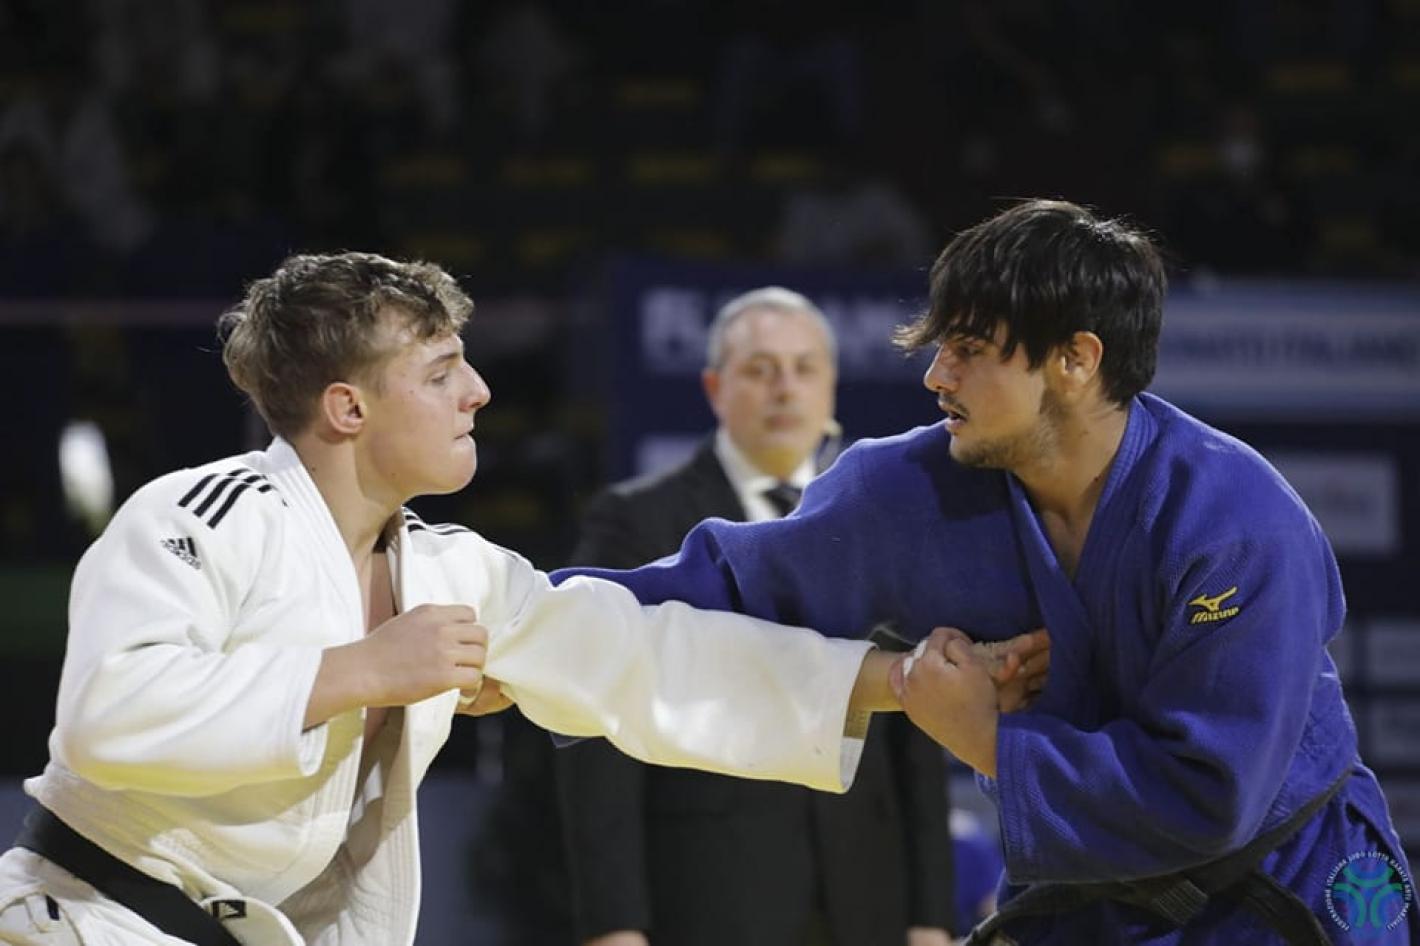 images/umbria/judo/2021/medium/fava_tommaso.jpg